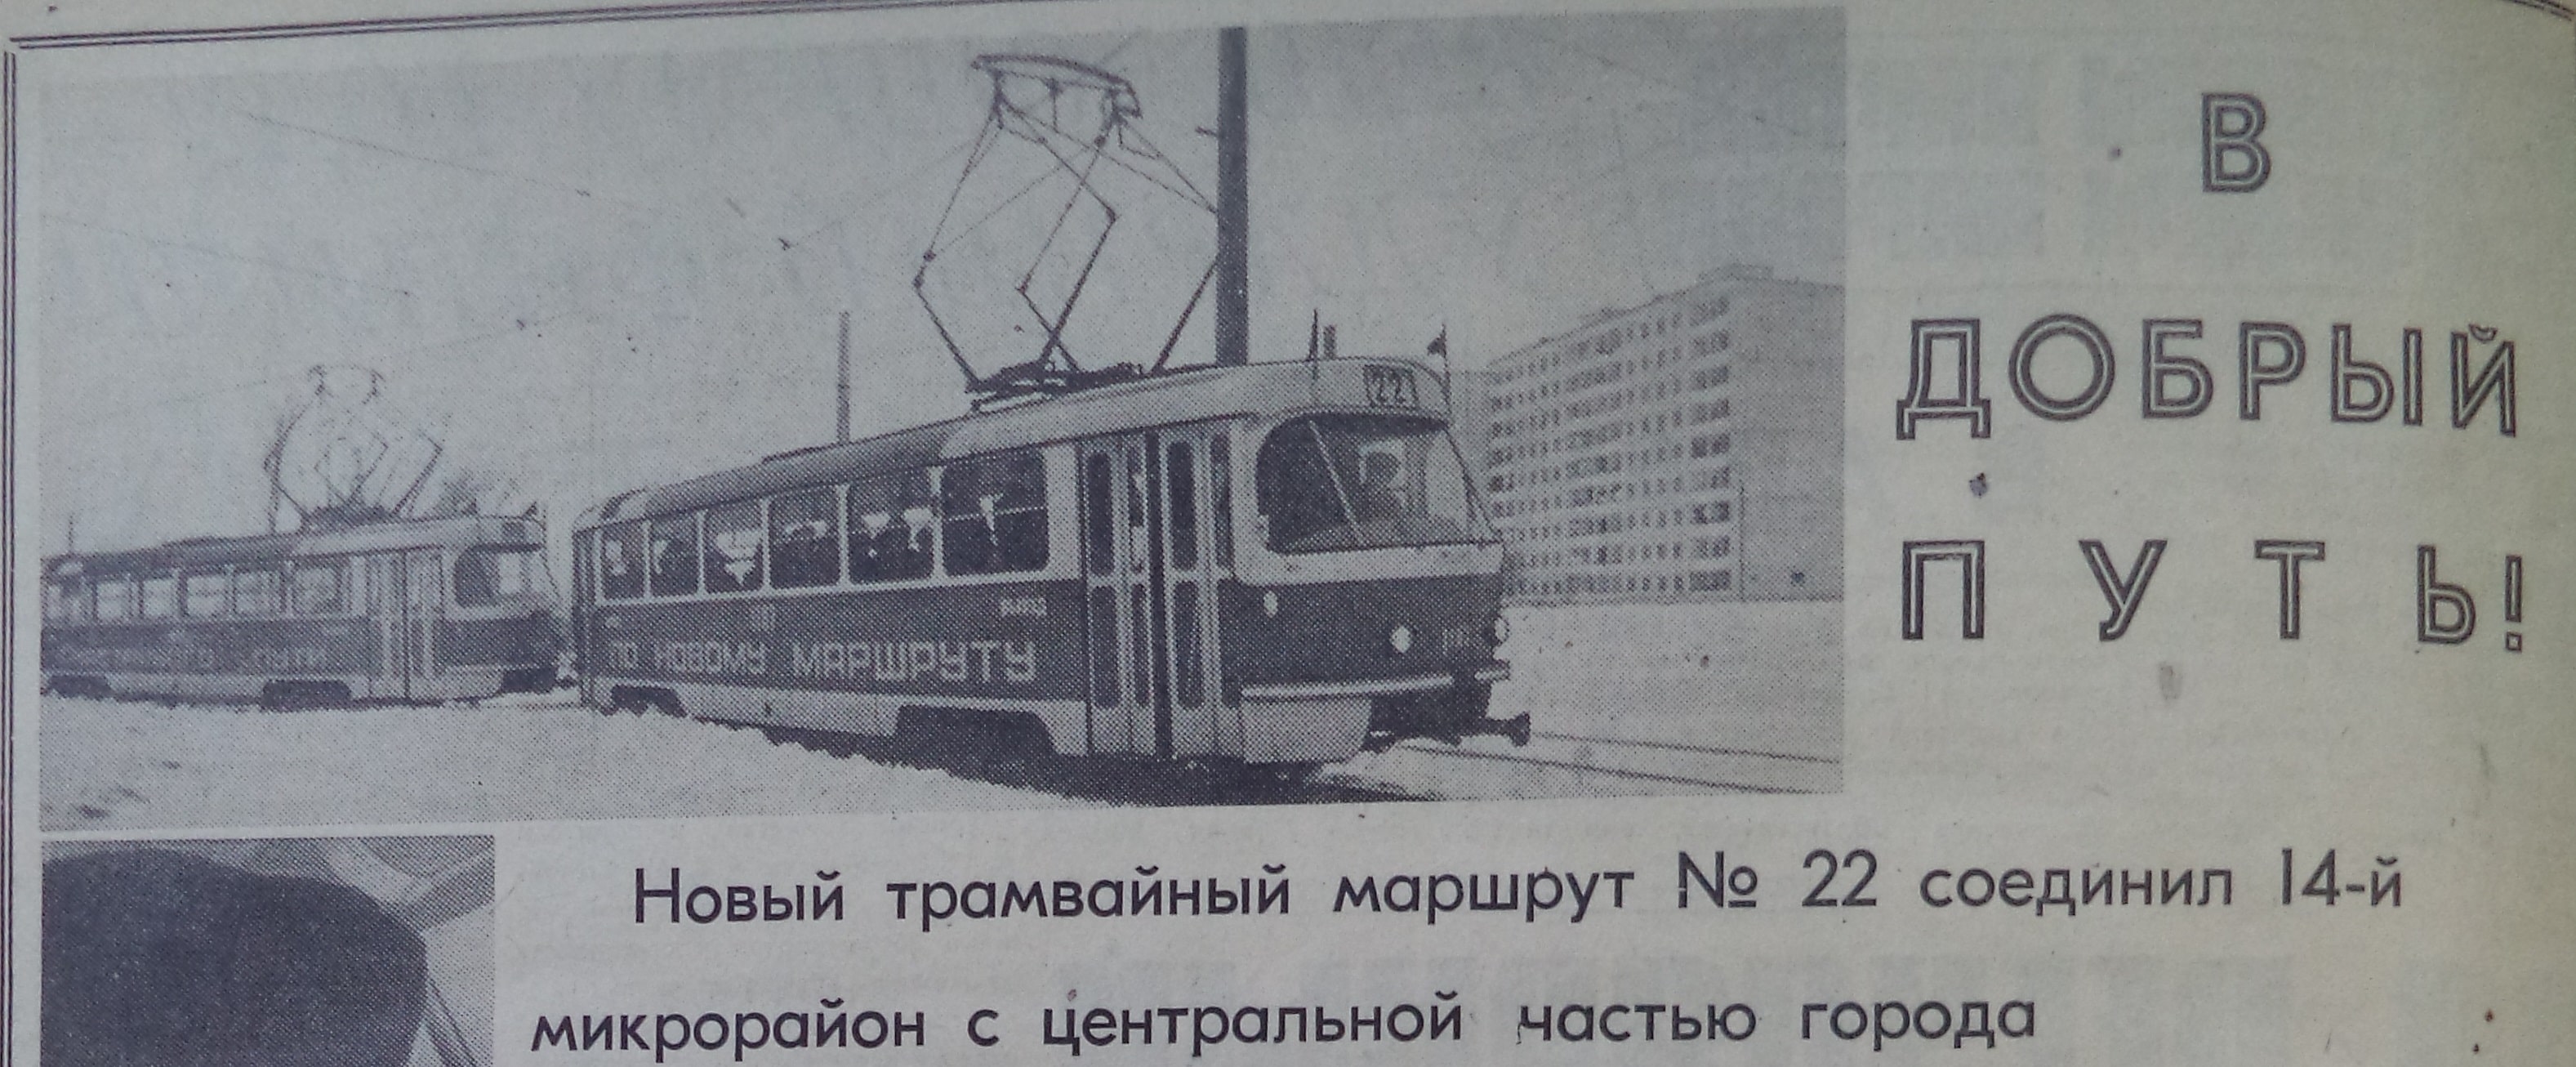 Ташкентская-ФОТО-38-ЗРР-1973-12-20-пуск трамвая № 22